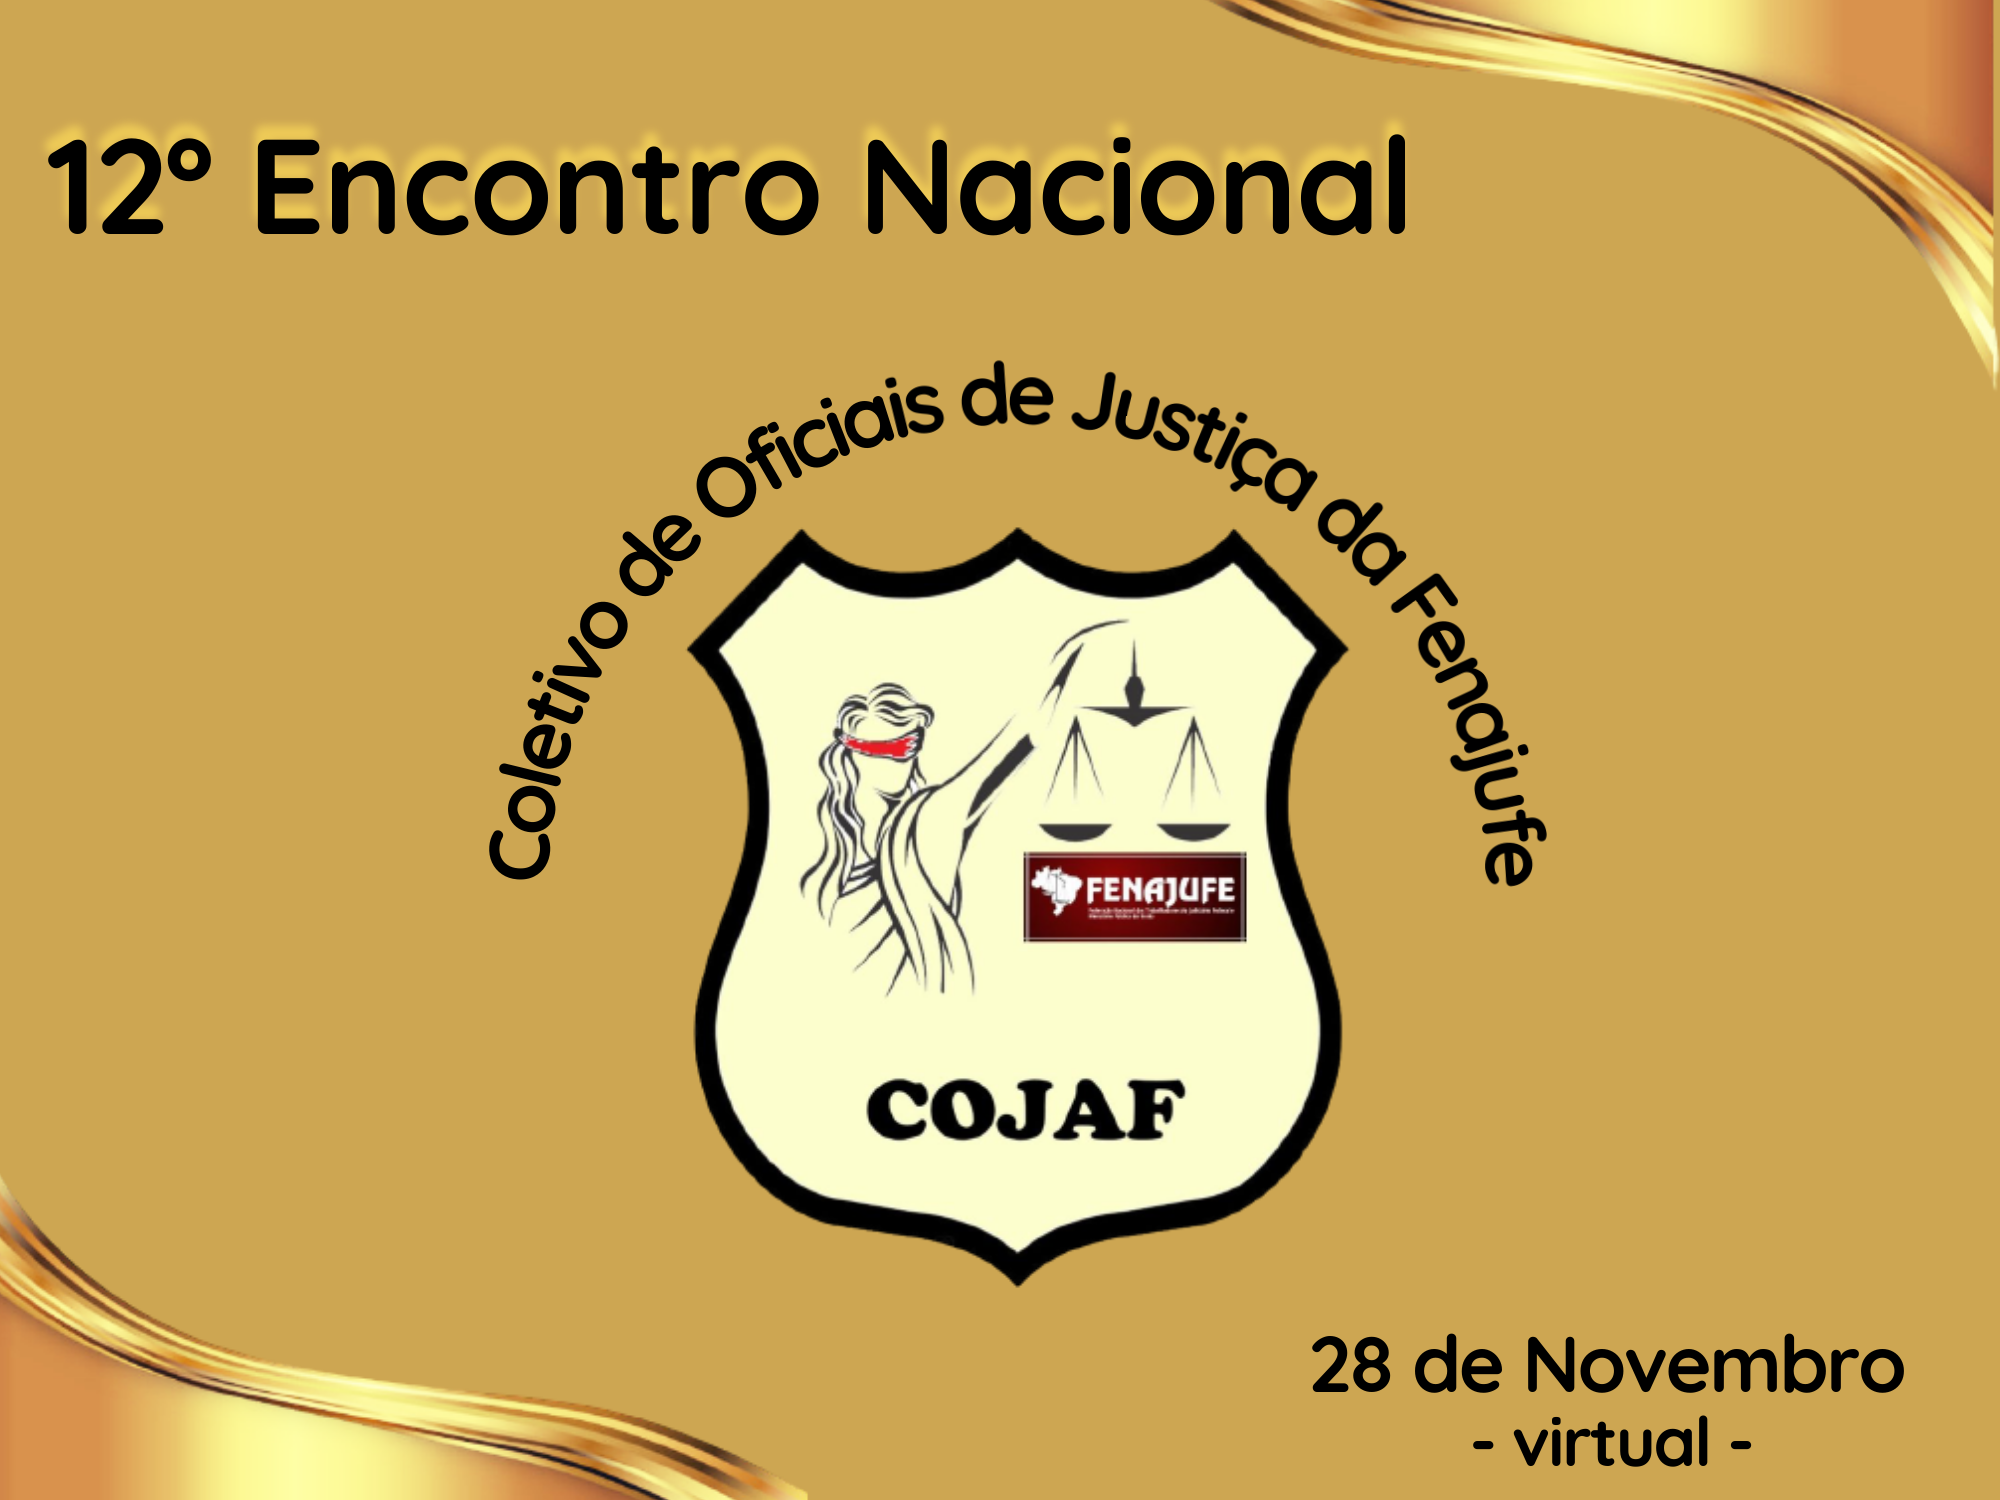 Logomarca dourada com o emblema do COJAF ao centro, informando 28 de novembro como data de realização